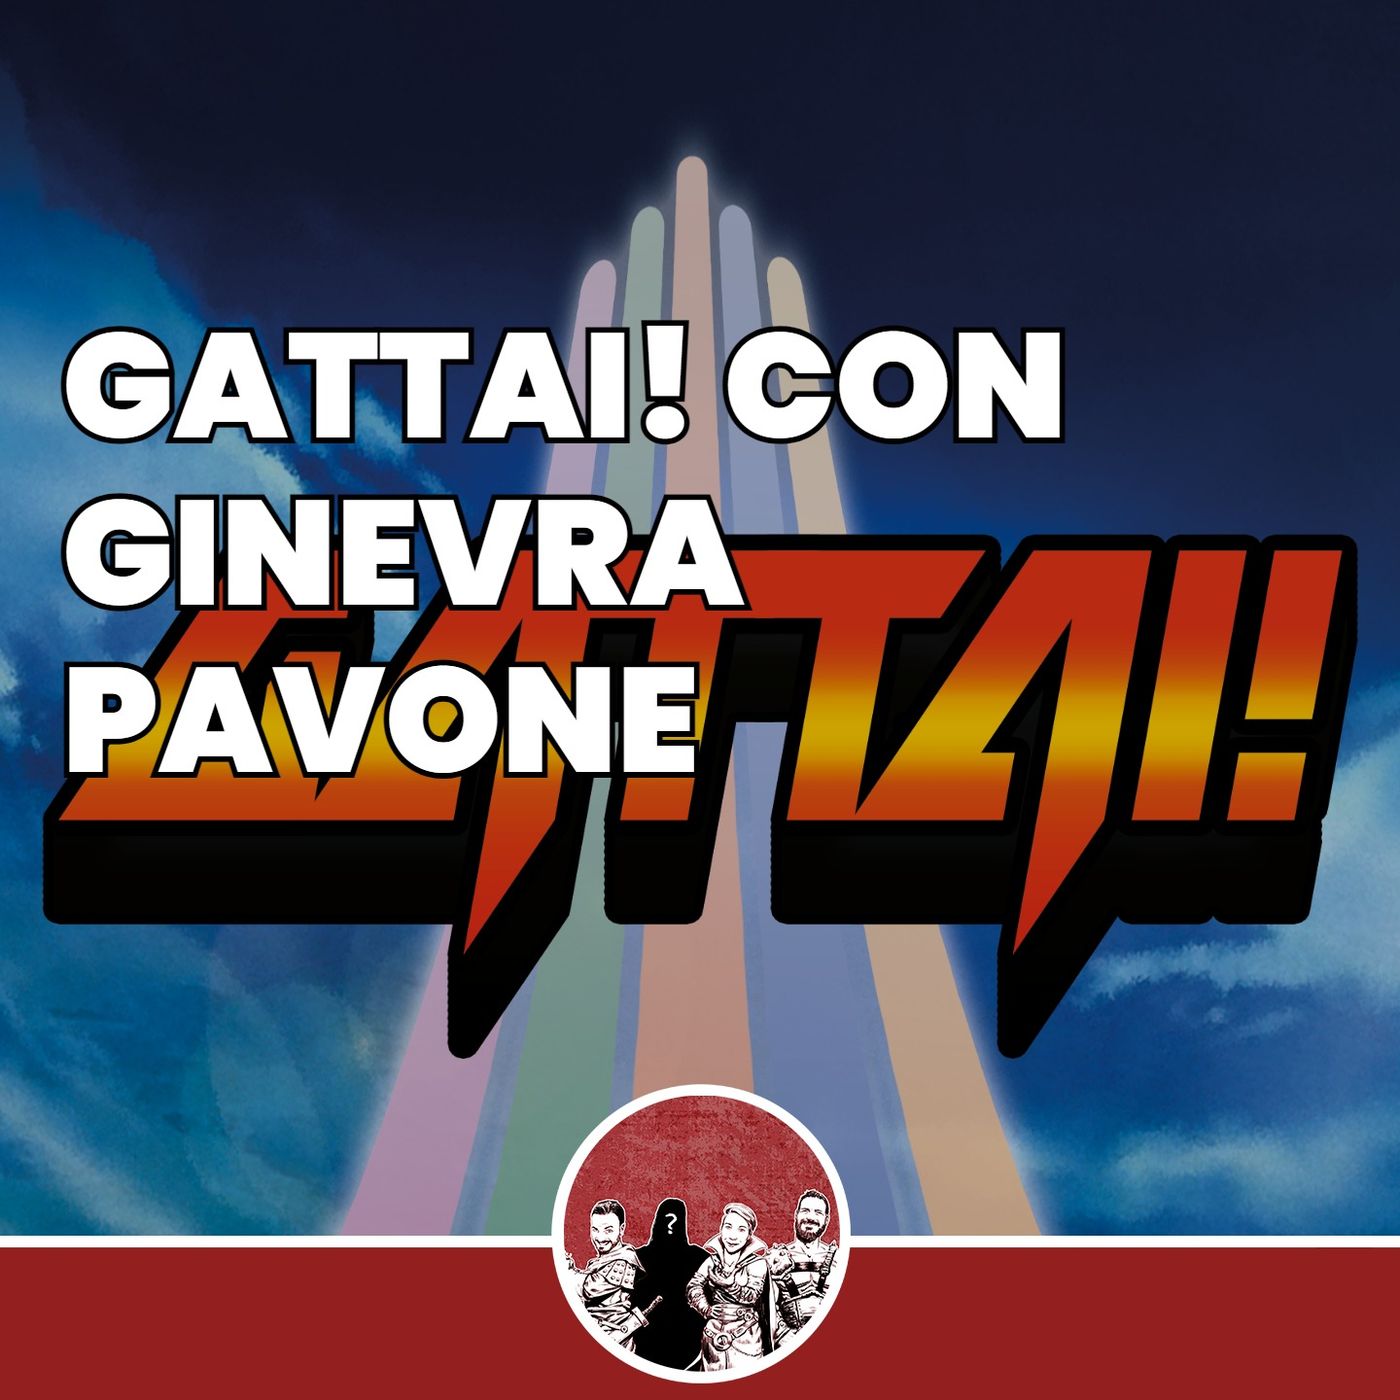 Gattai! con Ginevra Pavoni (MS Edizioni)